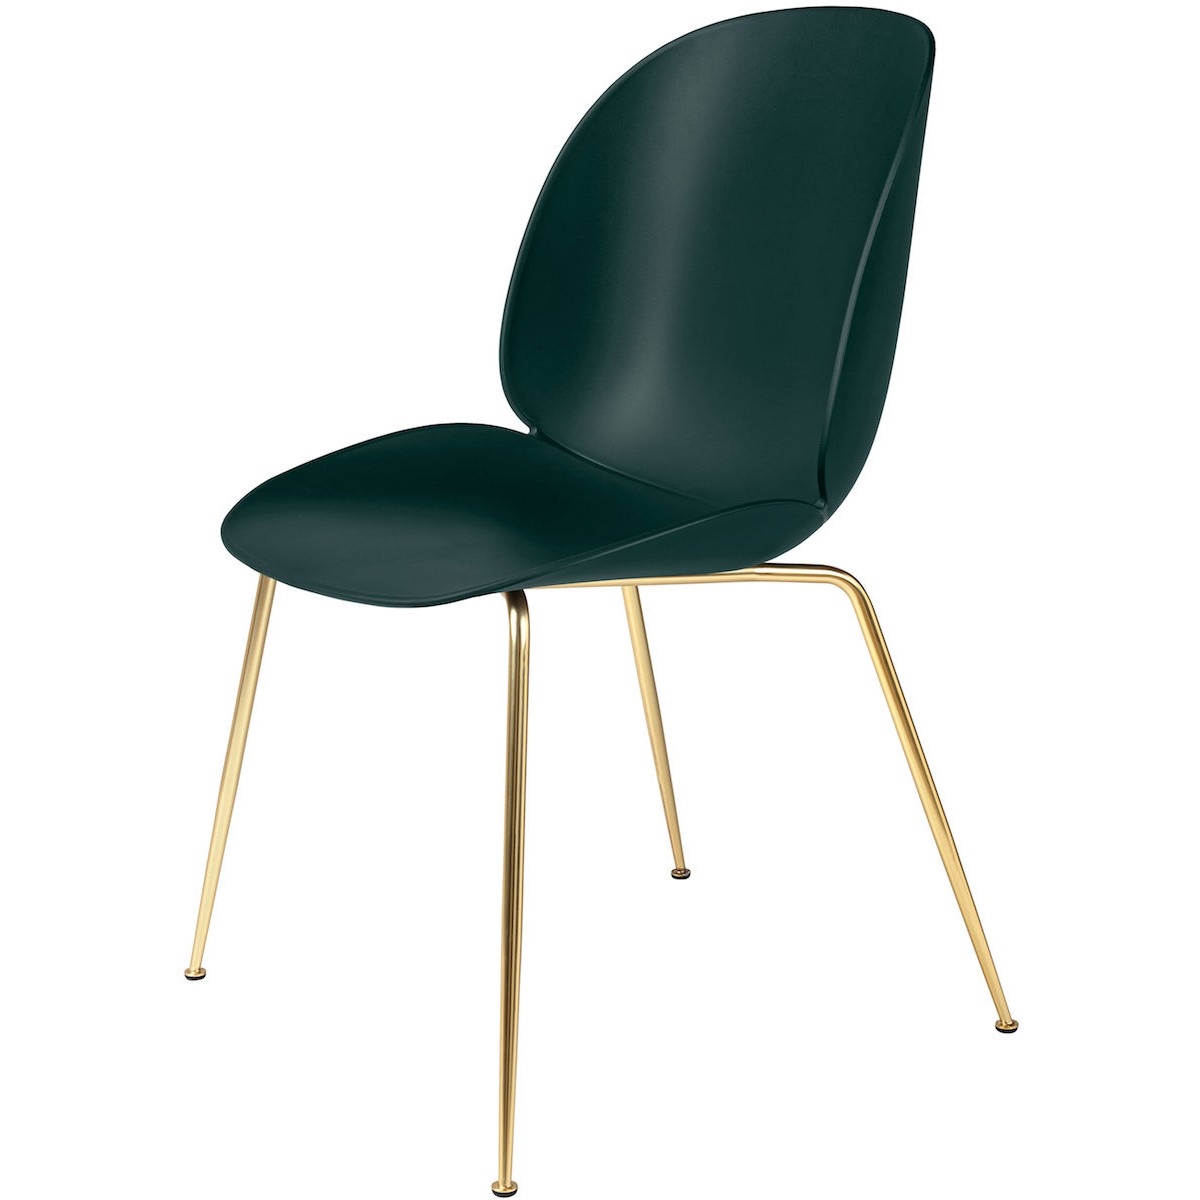 Coque vert foncé - base laiton semi-mat - chaise Beetle plastique